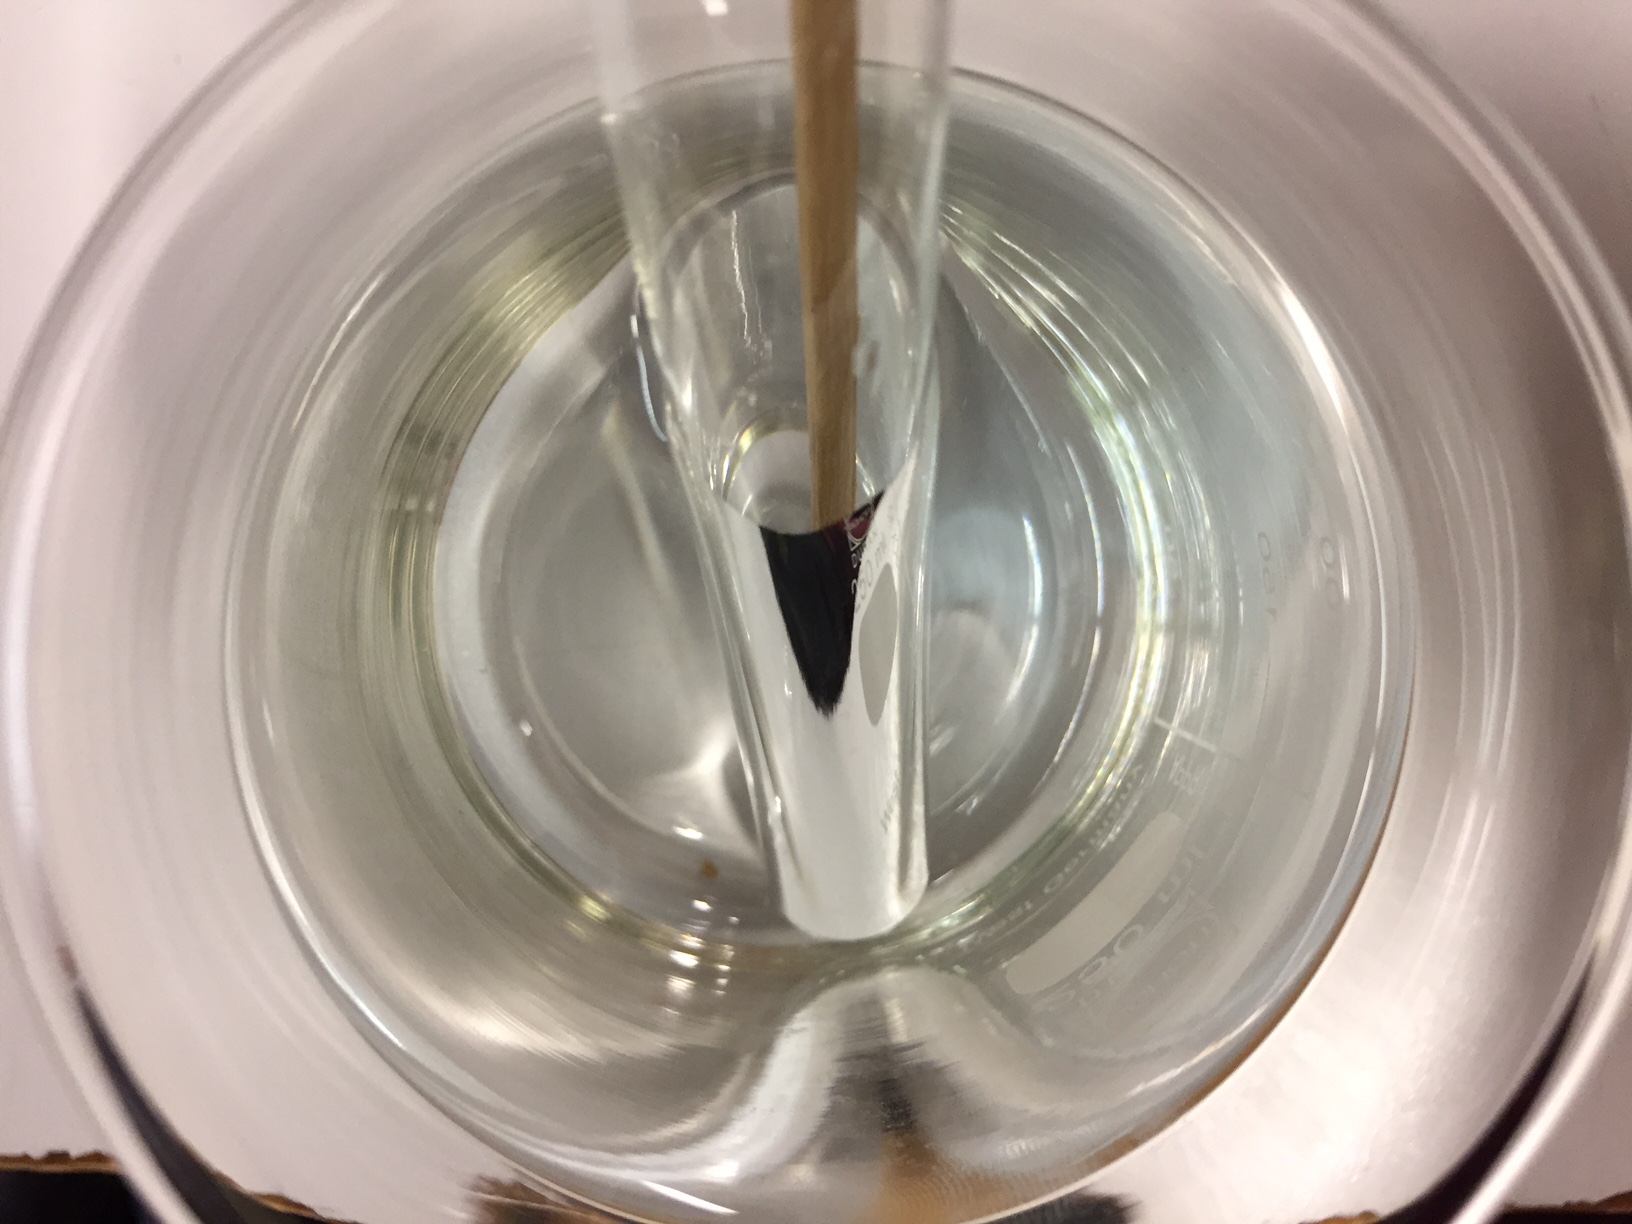 Wasserglas, Reagentglas und Holzstäbchen